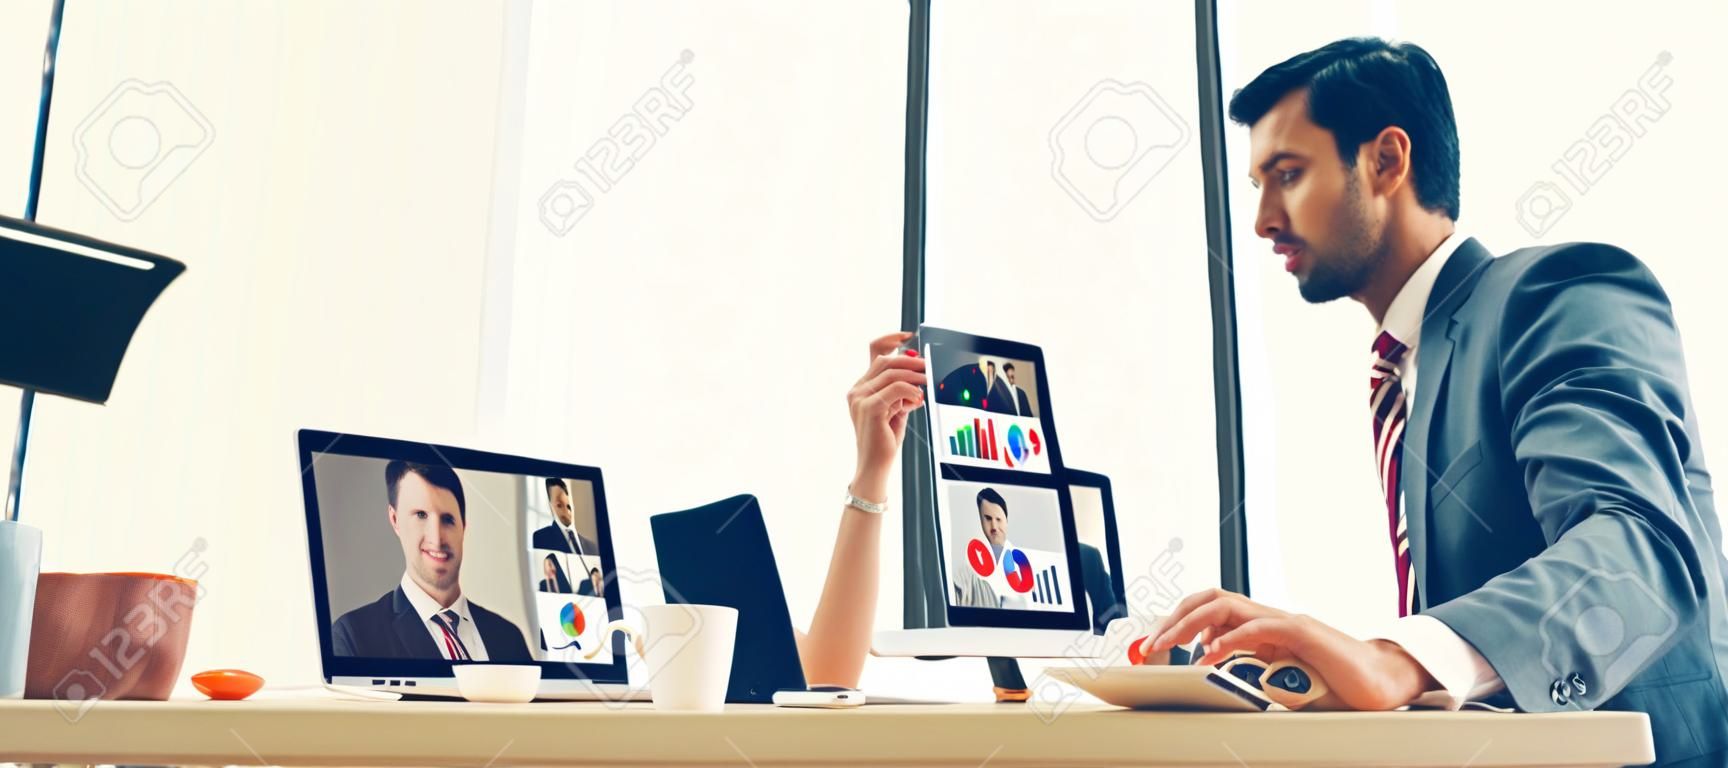 Video call groep zakelijke mensen vergadering op virtuele werkplek of op afstand kantoor. Telework conferentie call met behulp van slimme video-technologie om te communiceren collega in professionele zakelijke.